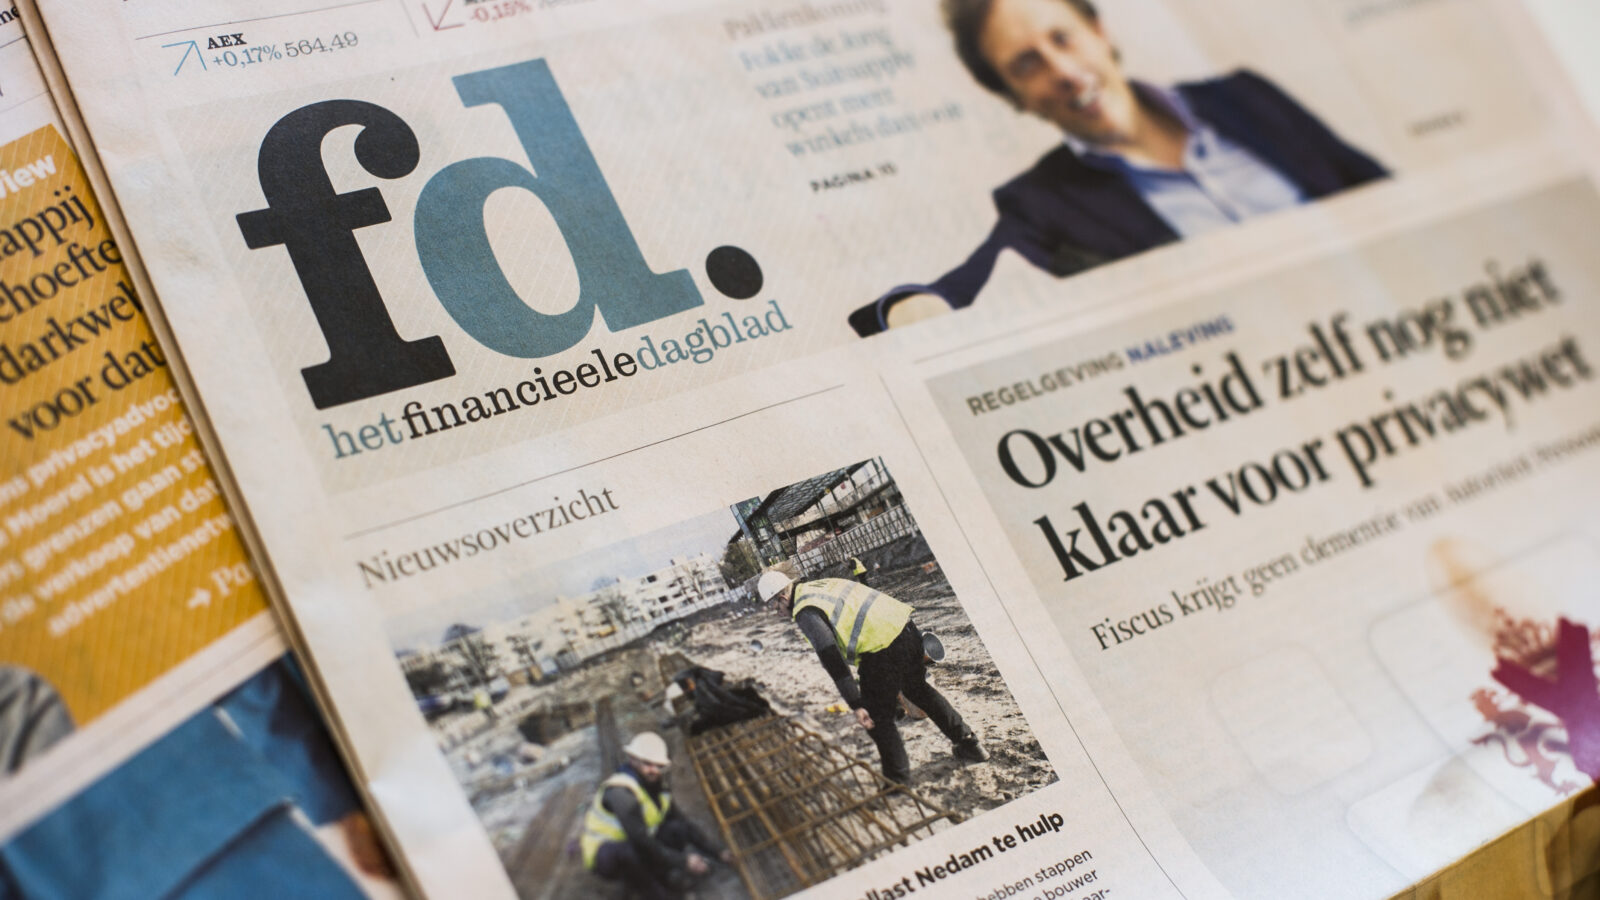 Het Financieele Dagblad vital to finance professionals